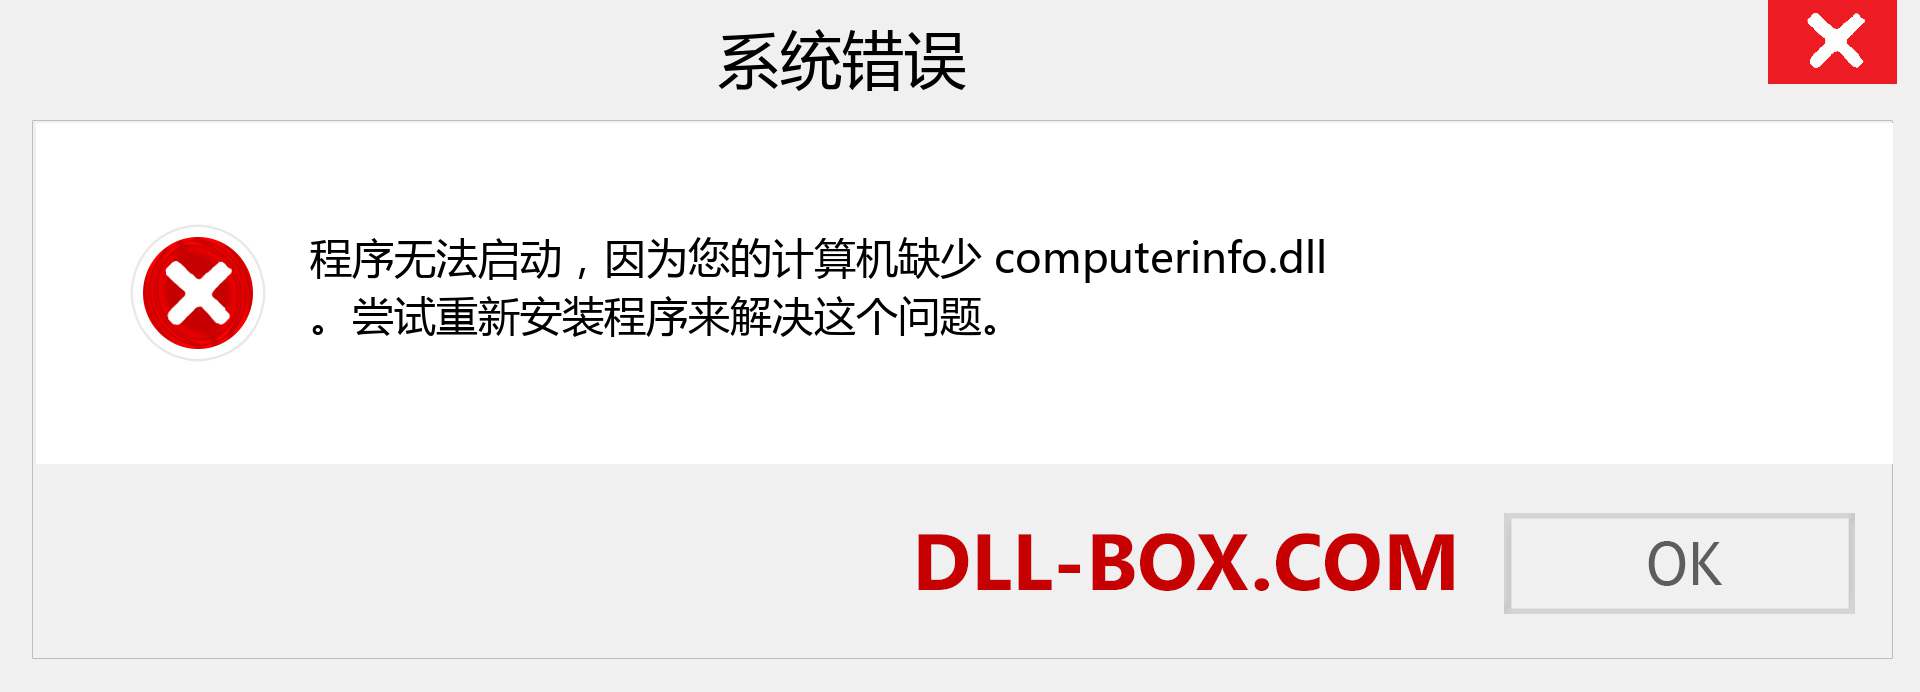 computerinfo.dll 文件丢失？。 适用于 Windows 7、8、10 的下载 - 修复 Windows、照片、图像上的 computerinfo dll 丢失错误